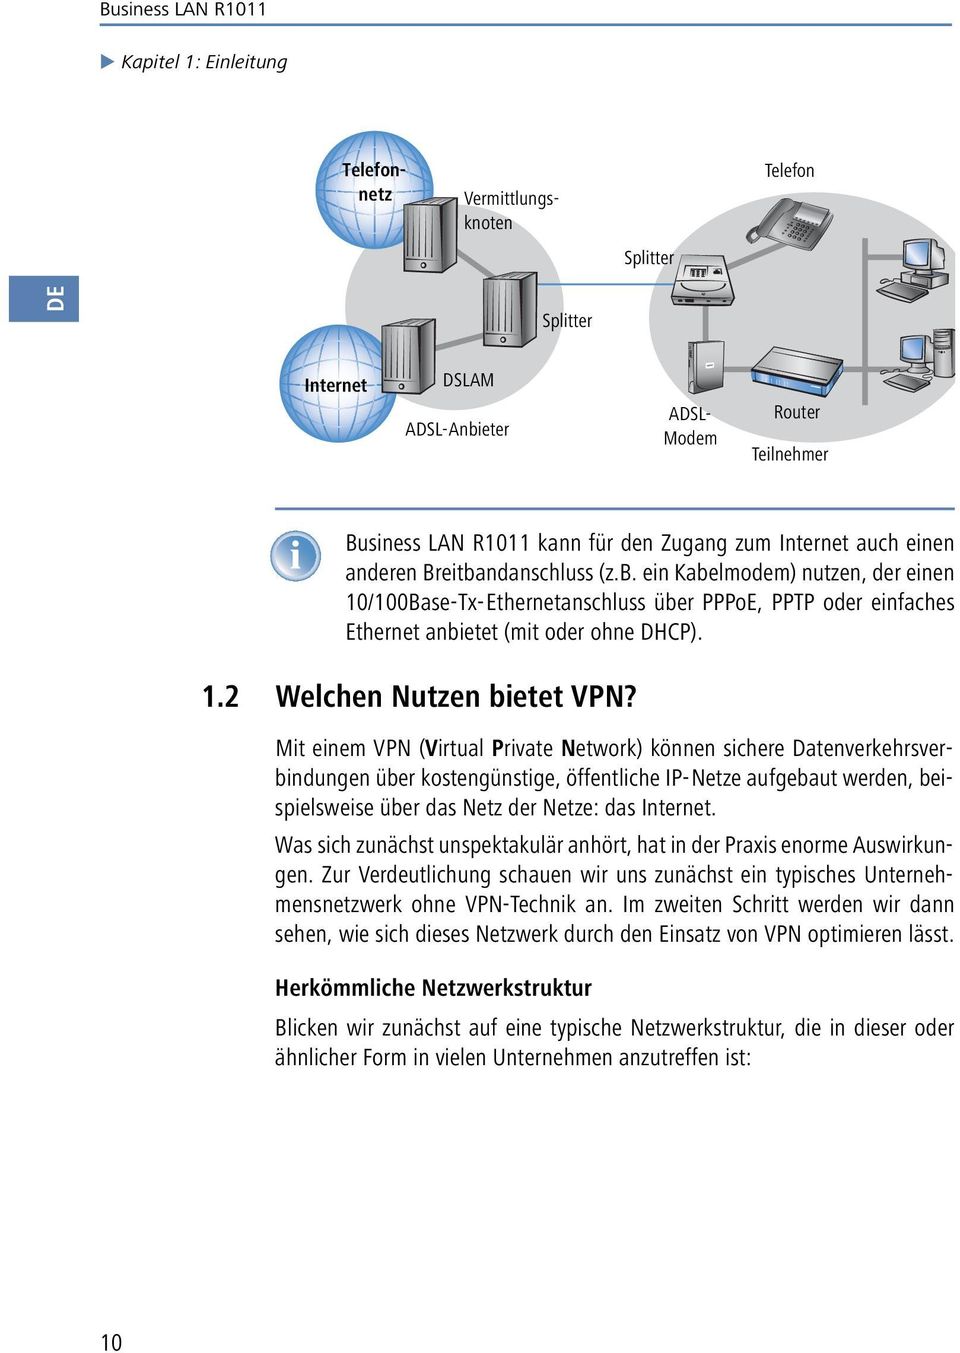 Mit einem VPN (Virtual Private Network) können sichere Datenverkehrsverbindungen über kostengünstige, öffentliche IP-Netze aufgebaut werden, beispielsweise über das Netz der Netze: das Internet.